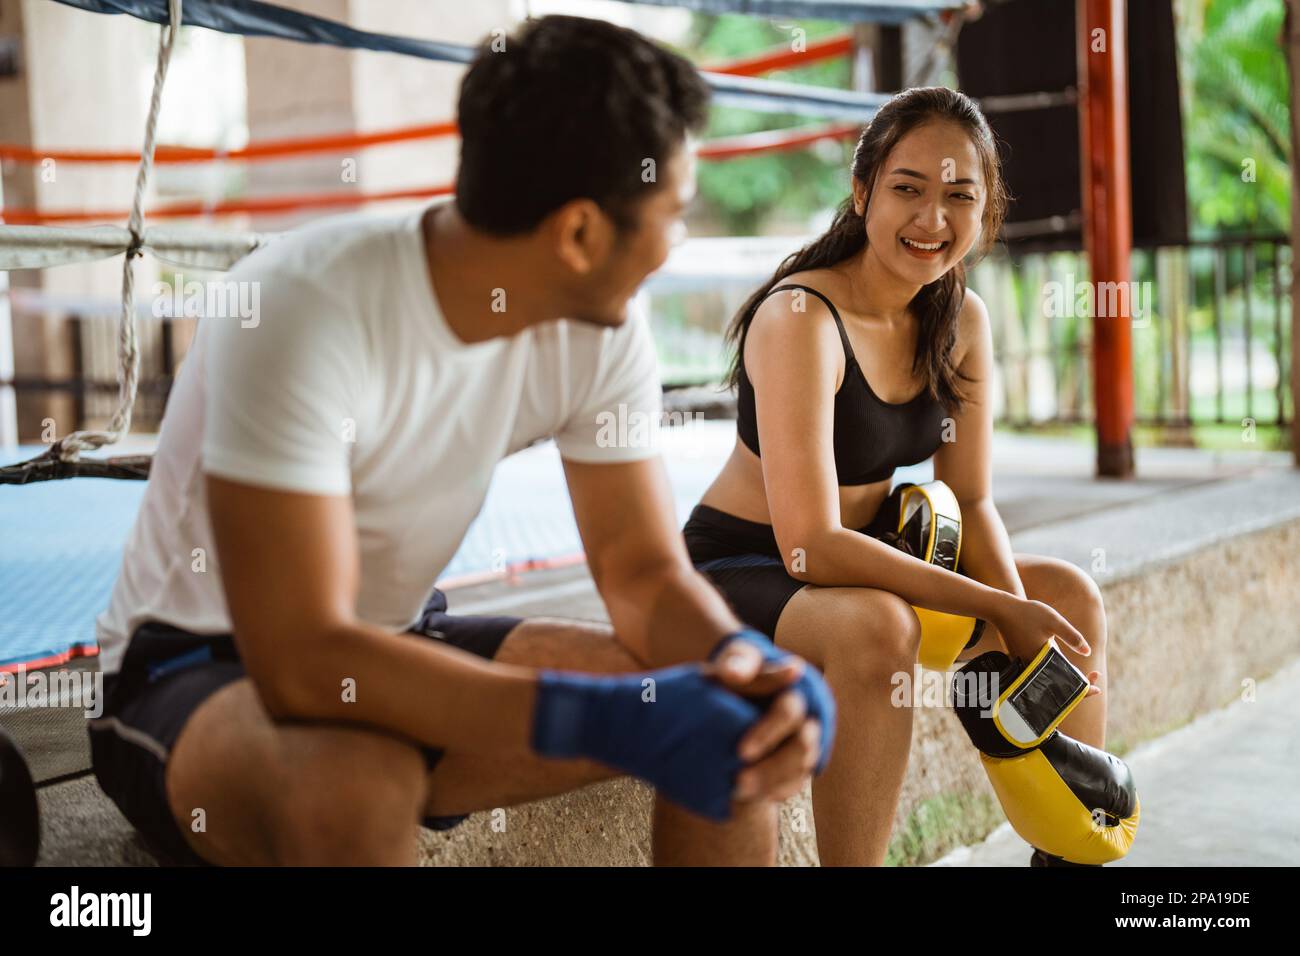 Ein weiblicher Boxer und der männliche Boxer sitzen und lachen zusammen Stockfoto